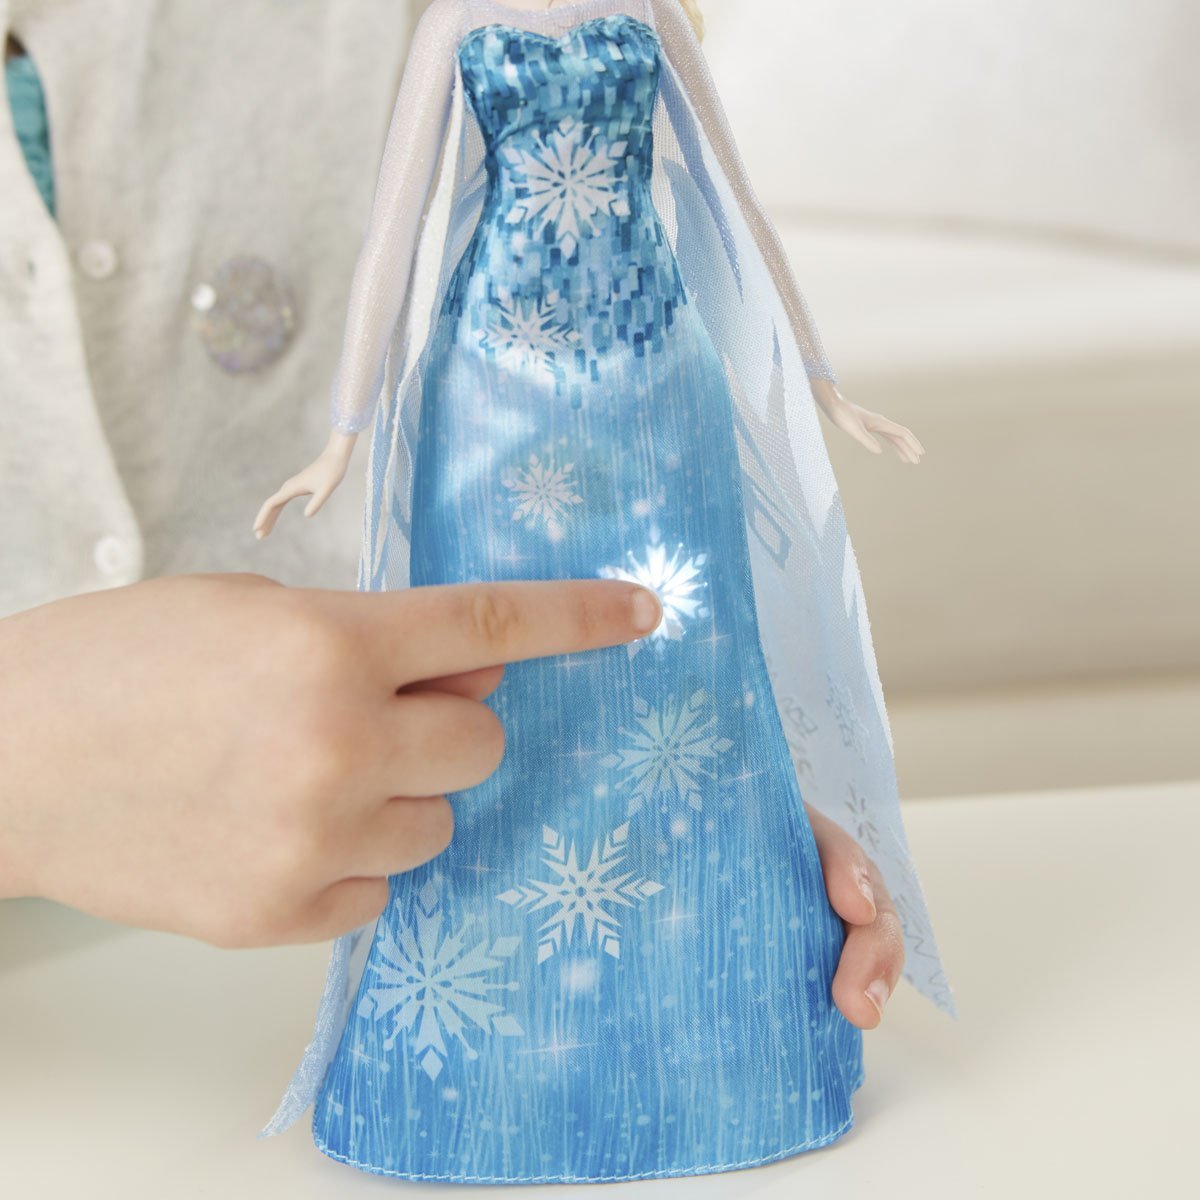 Frozen Vestido Musical Hasbro